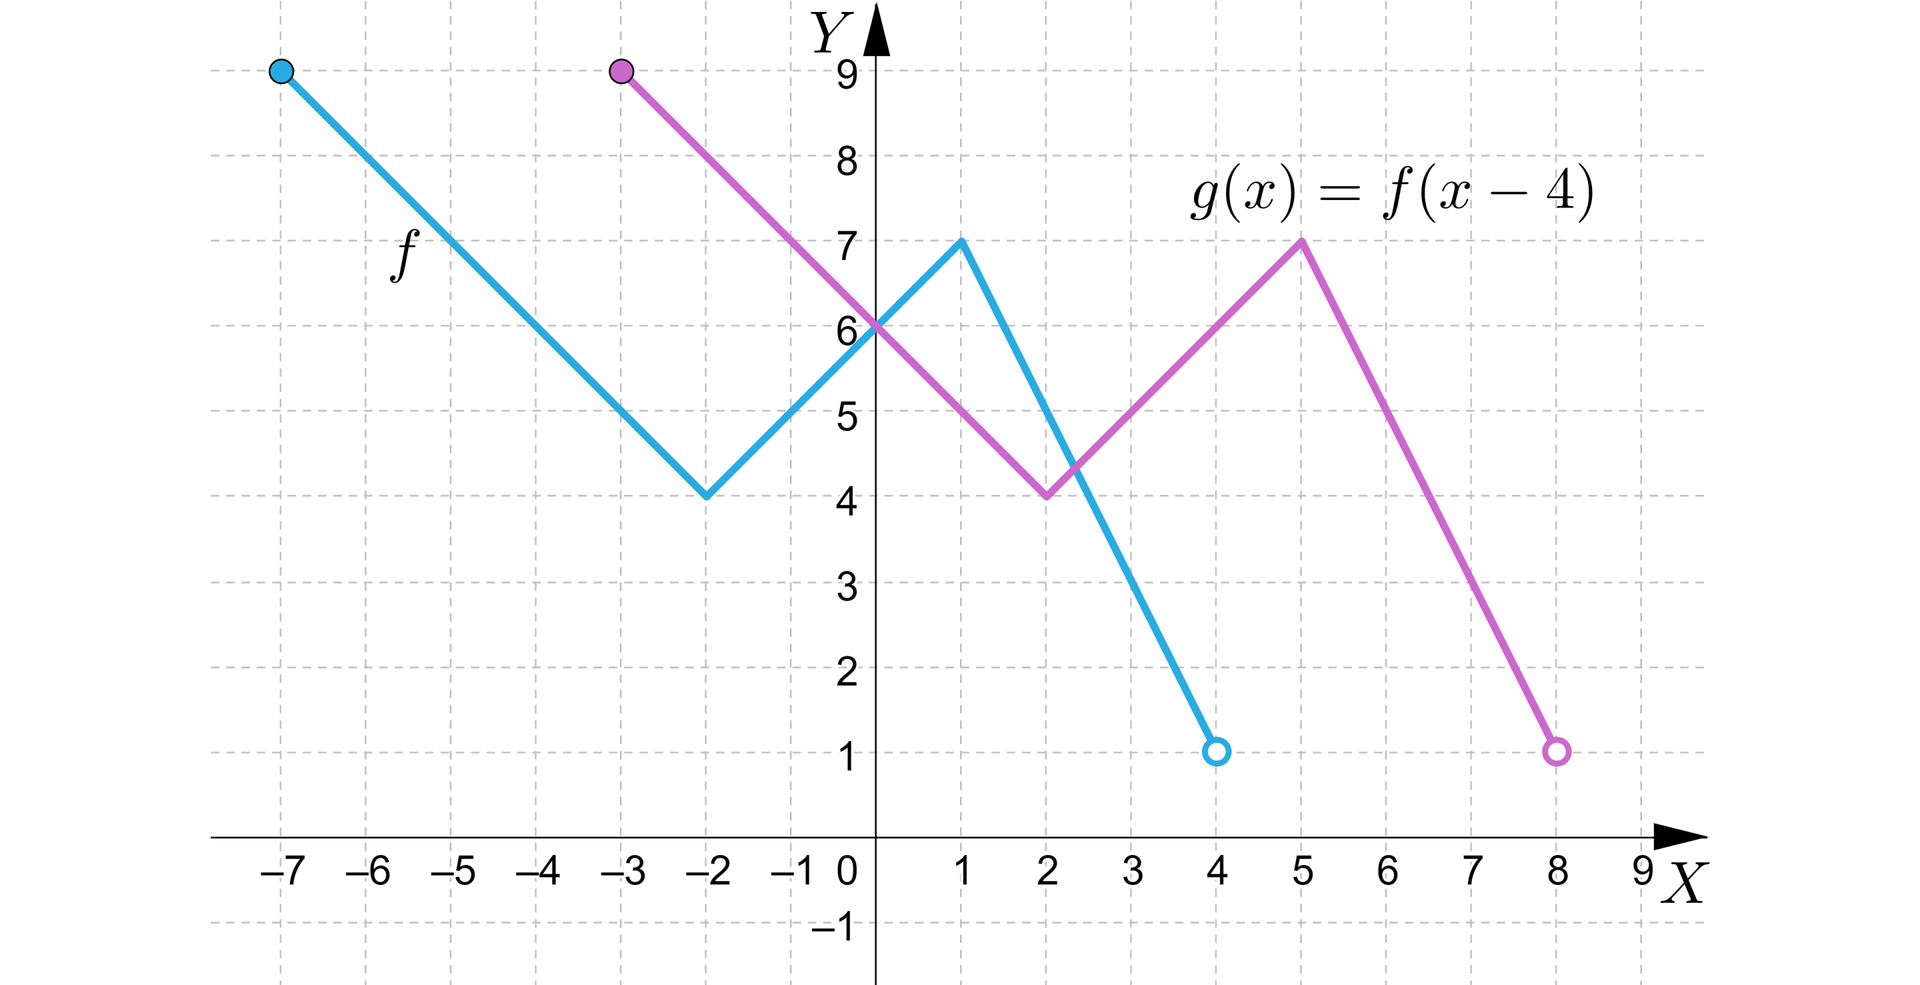 Na rysunku przedstawiony jest układ współrzędnych z poziomą osią X od minus dziewięciu do siedmiu oraz z pionową osią Y od minus jeden do dziewięciu. W układzie zaznaczono dwa wykresy funkcji. Wykres funkcji f jest w postaci łamanej, która zaczyna się w punkcie należącym do wykresu  o współrzędnych -7,9. Następnie wykres funkcji maleje do punktu o współrzędnych -2,4, a potem rośnie do punktu o współrzędnych 1,7. Ostatecznie wykres funkcji maleje do punktu nie należącego do wykresu o współrzędnych 4,1. Drugi wykres funkcji g również jest w postaci łamanej, która zaczyna się w punkcie należącym do wykresu o współrzędnych -3,9. Następnie wykres funkcji maleje do punktu o współrzędnych 2,4, a potem rośnie do punktu o współrzędnych 5,7. Ostatecznie wykres funkcji maleje do punktu nie należącego do wykresu o współrzędnych 8,1.  Wykres funkcji opisano zależnością gx=fx-4.